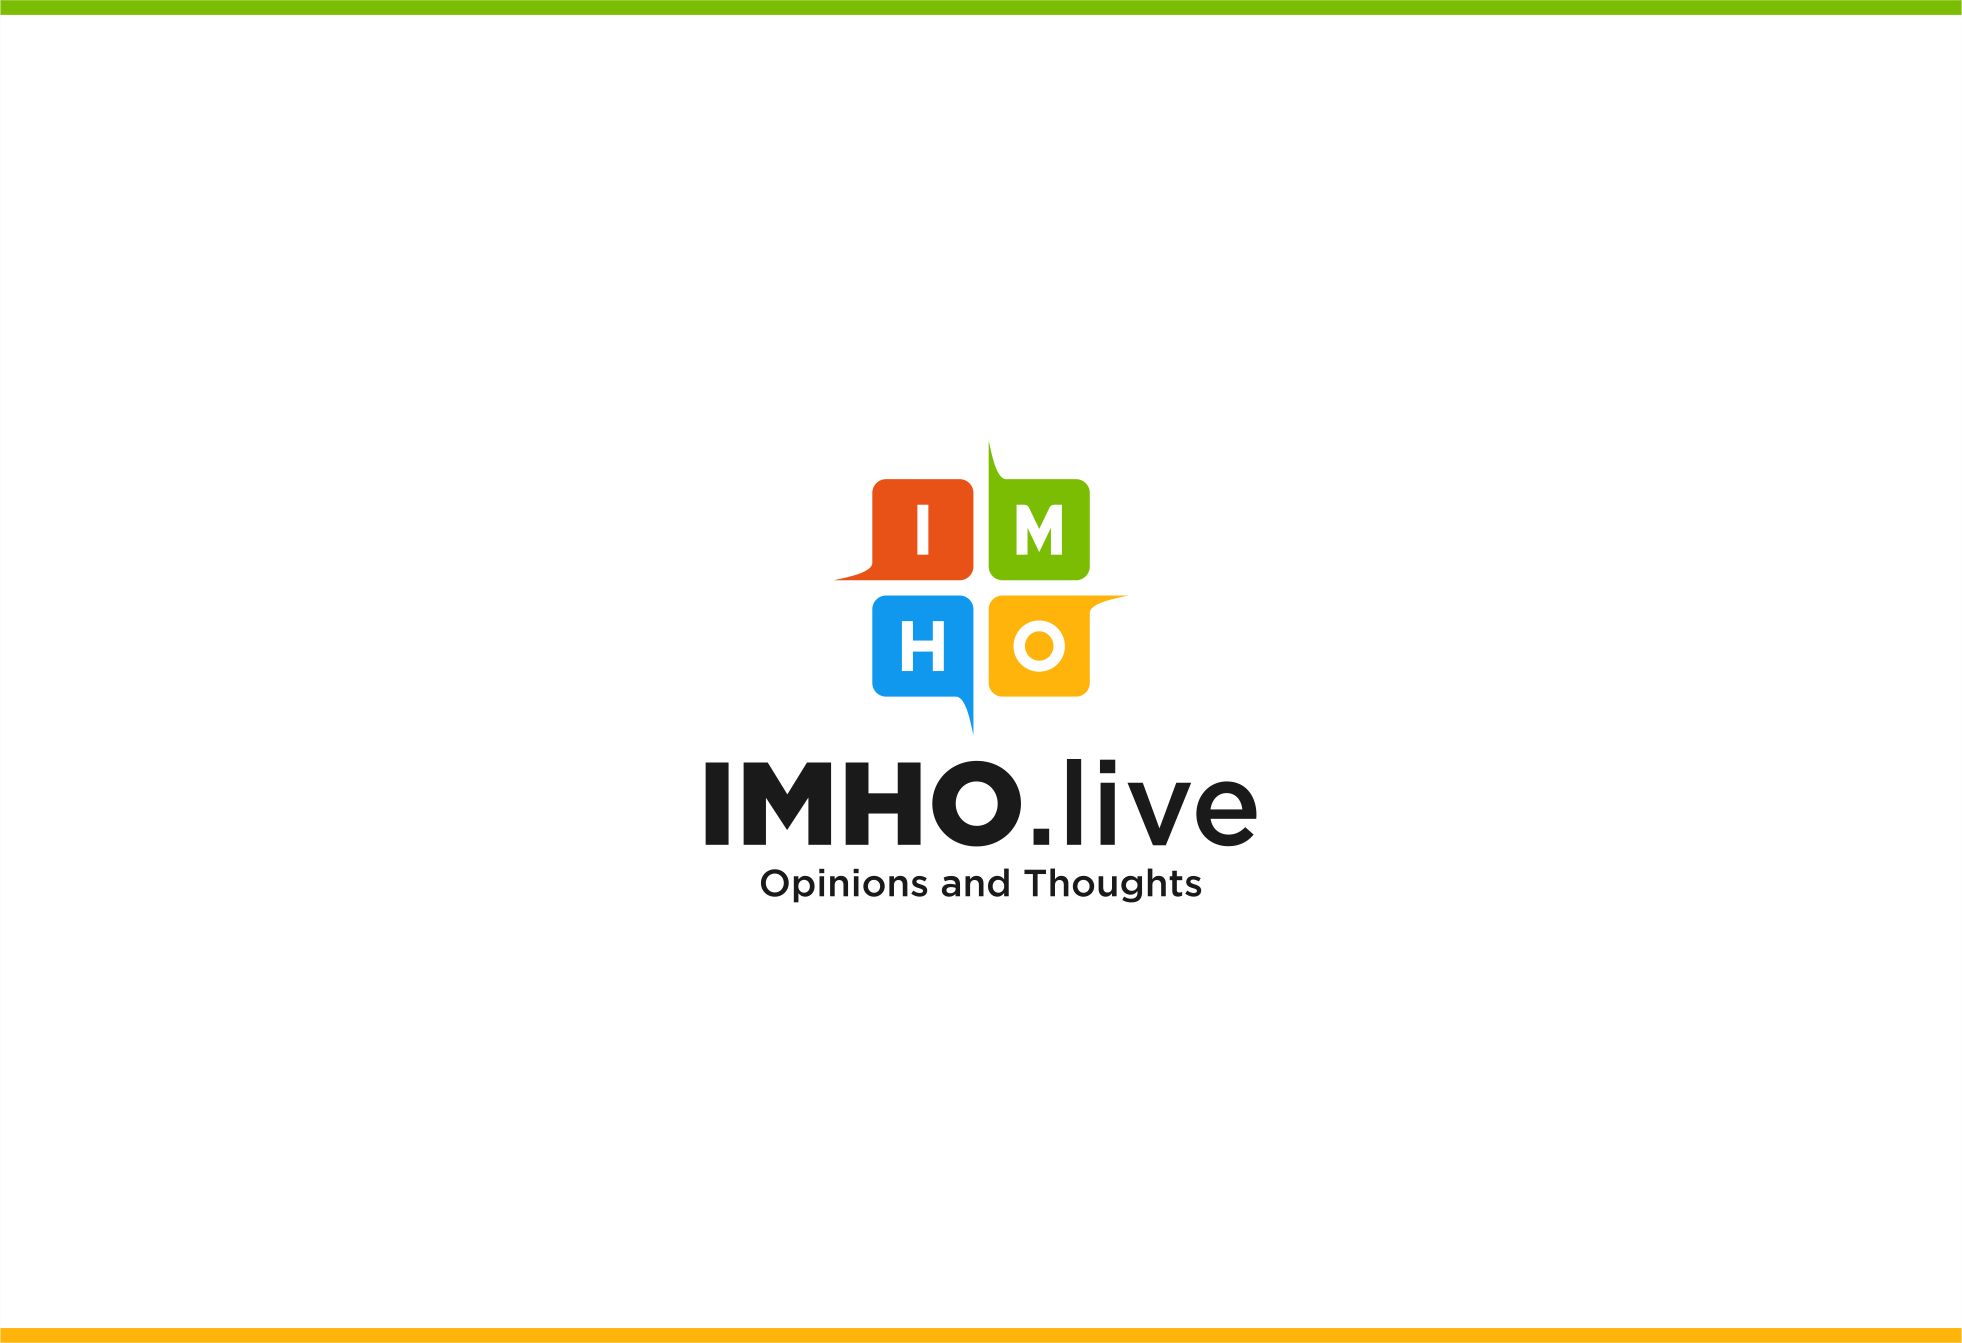 Логотип для IMHO.live — Opinions and Thoughts - дизайнер JMarcus